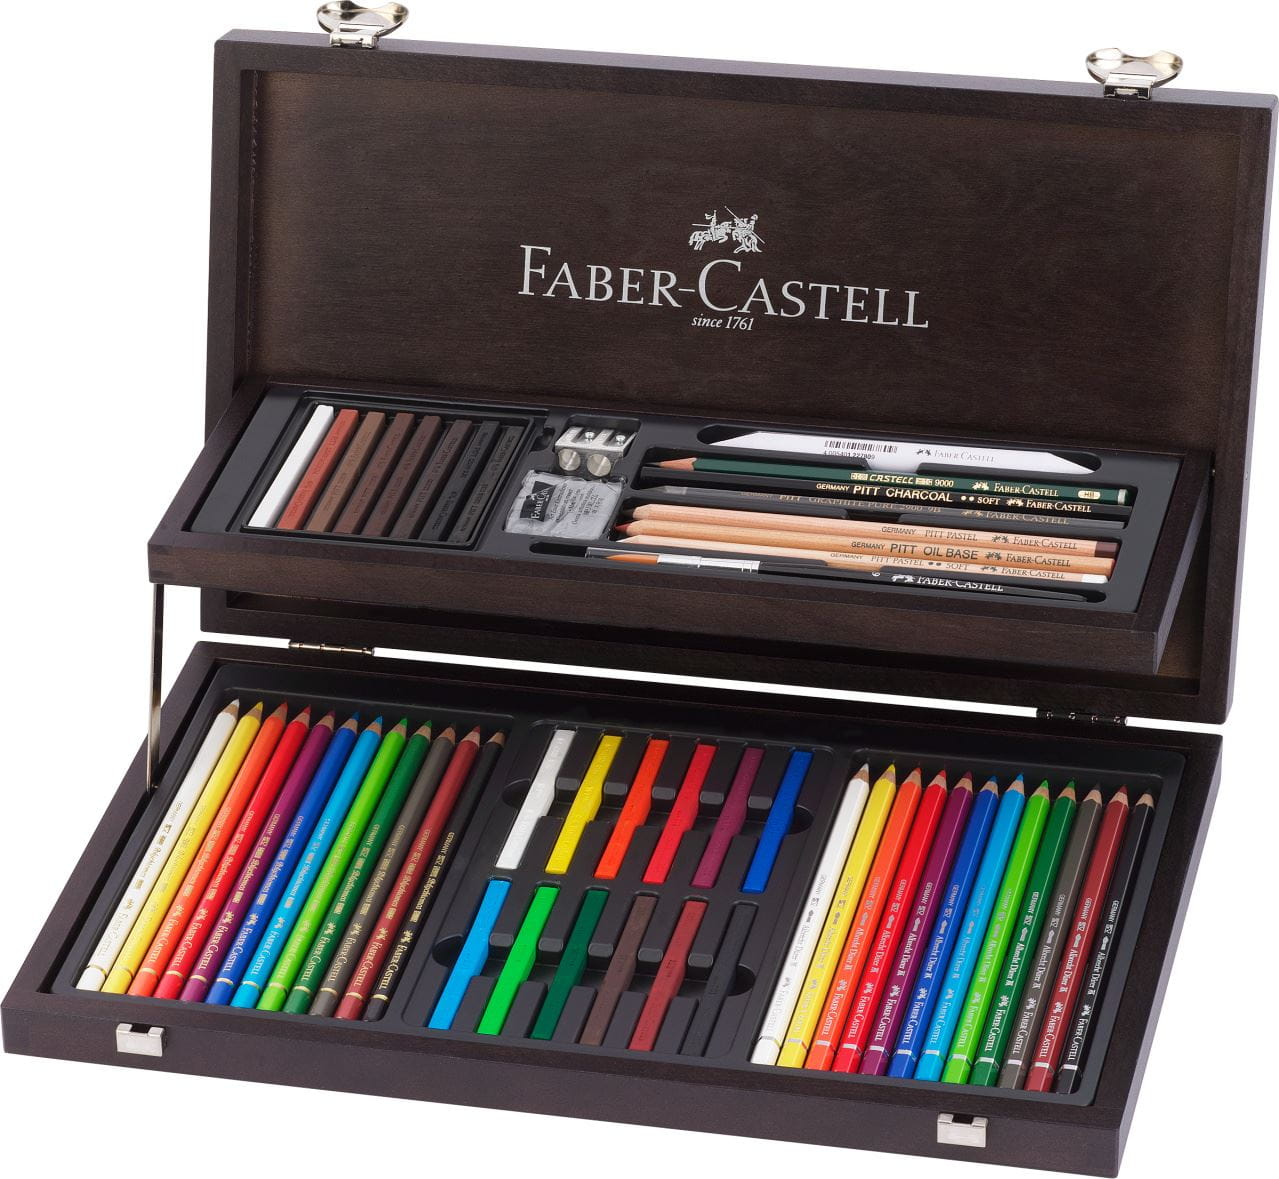 Faber-Castell - Kolekce Art & Graphic, dřevěná kazeta 54 ks a příslušenství